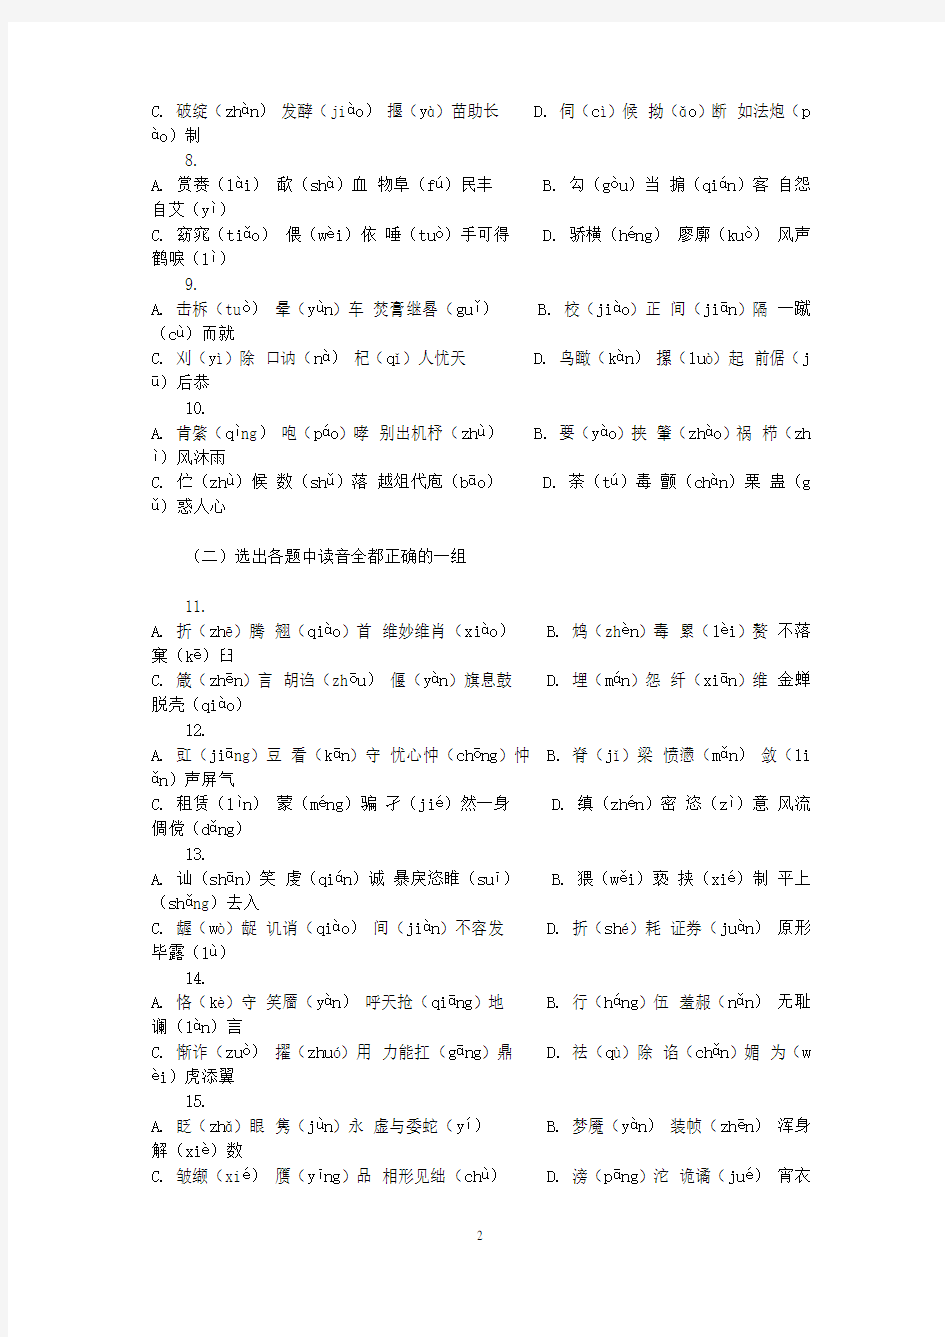 汉语拼音试题选择题型